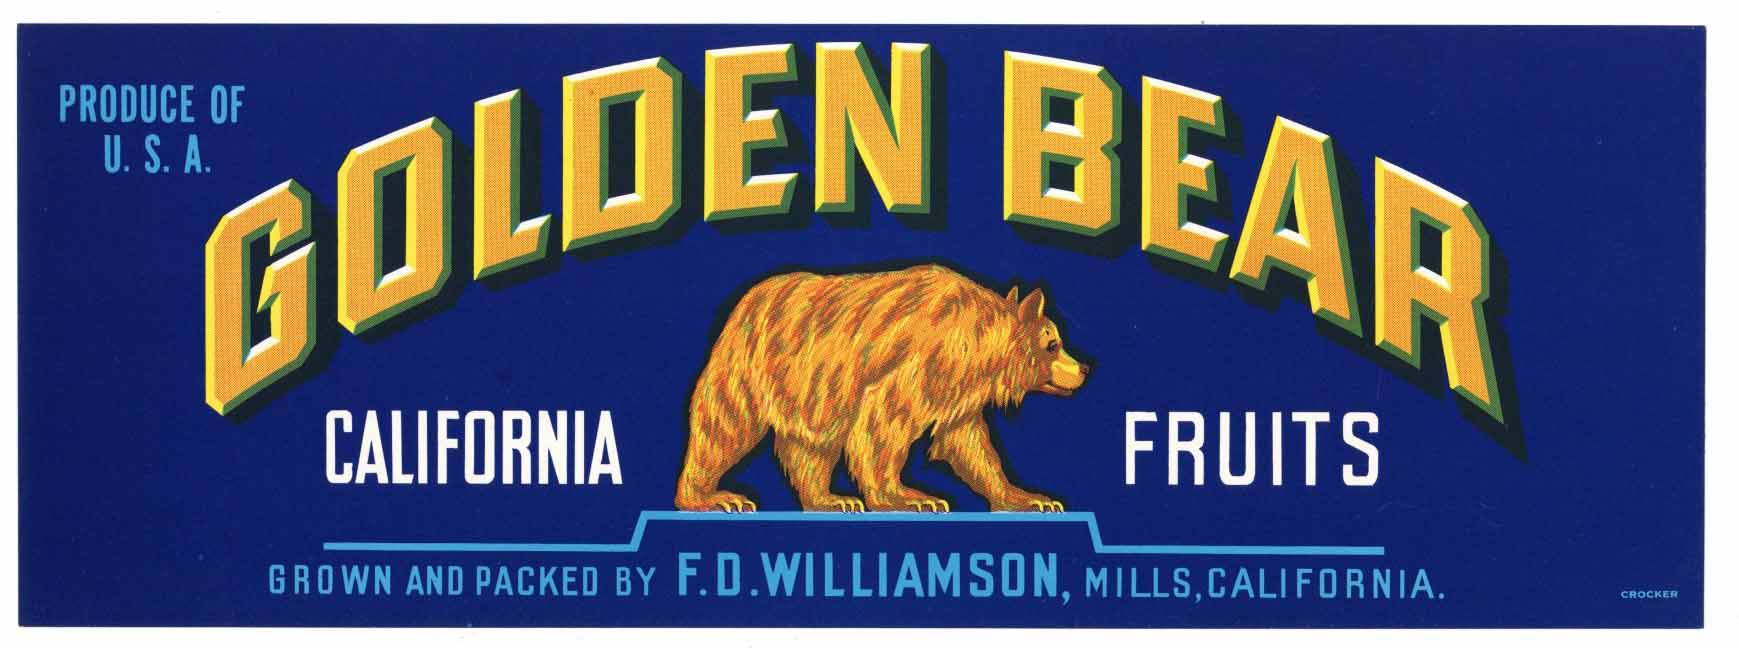 Golden Bear Brand Vintage Fruit Crate Label